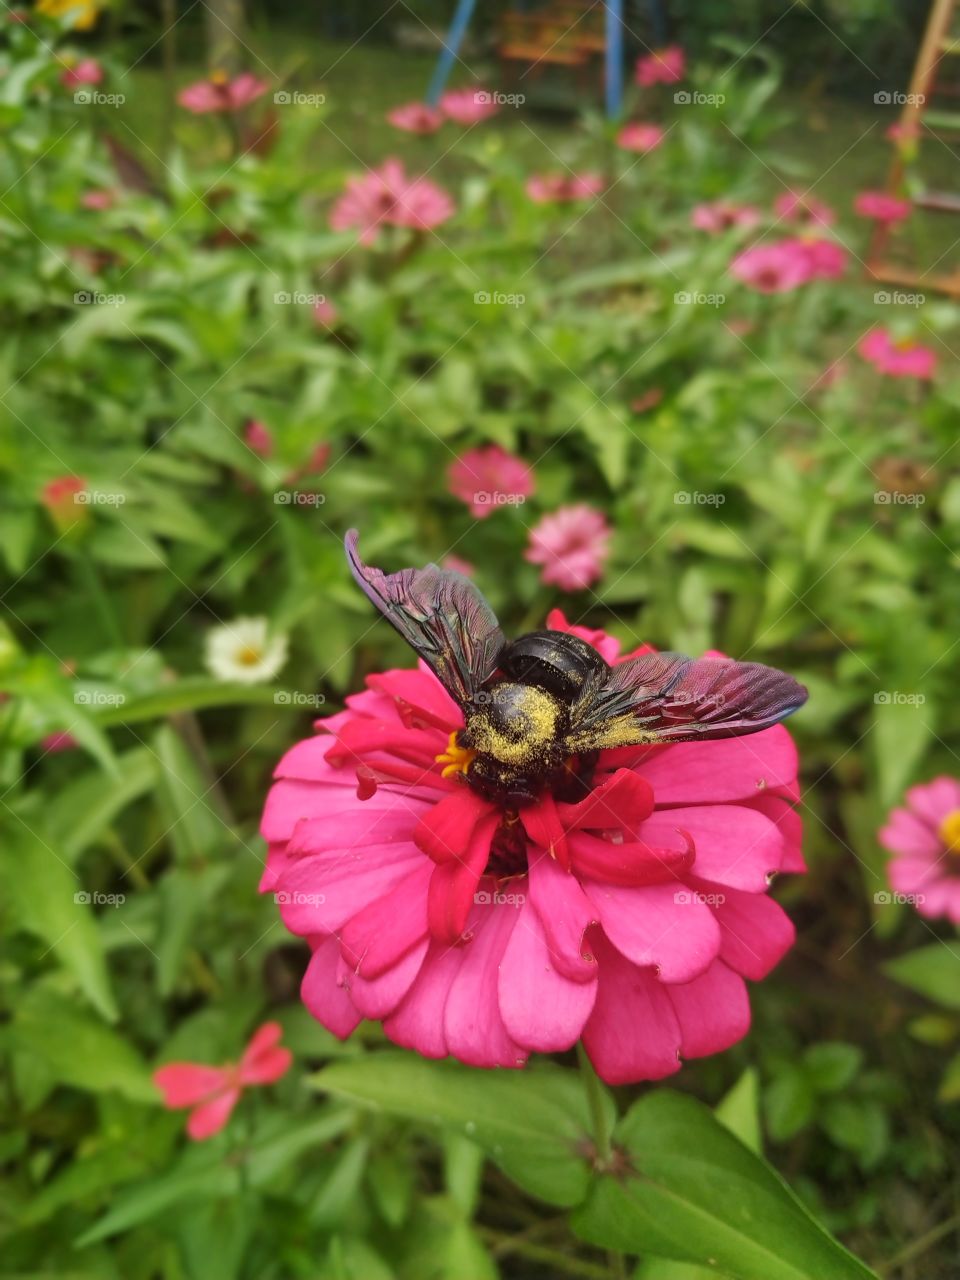 bublebee landing on beautiful Zenia Flowers. this image shoot in yogyakarta Indonesia